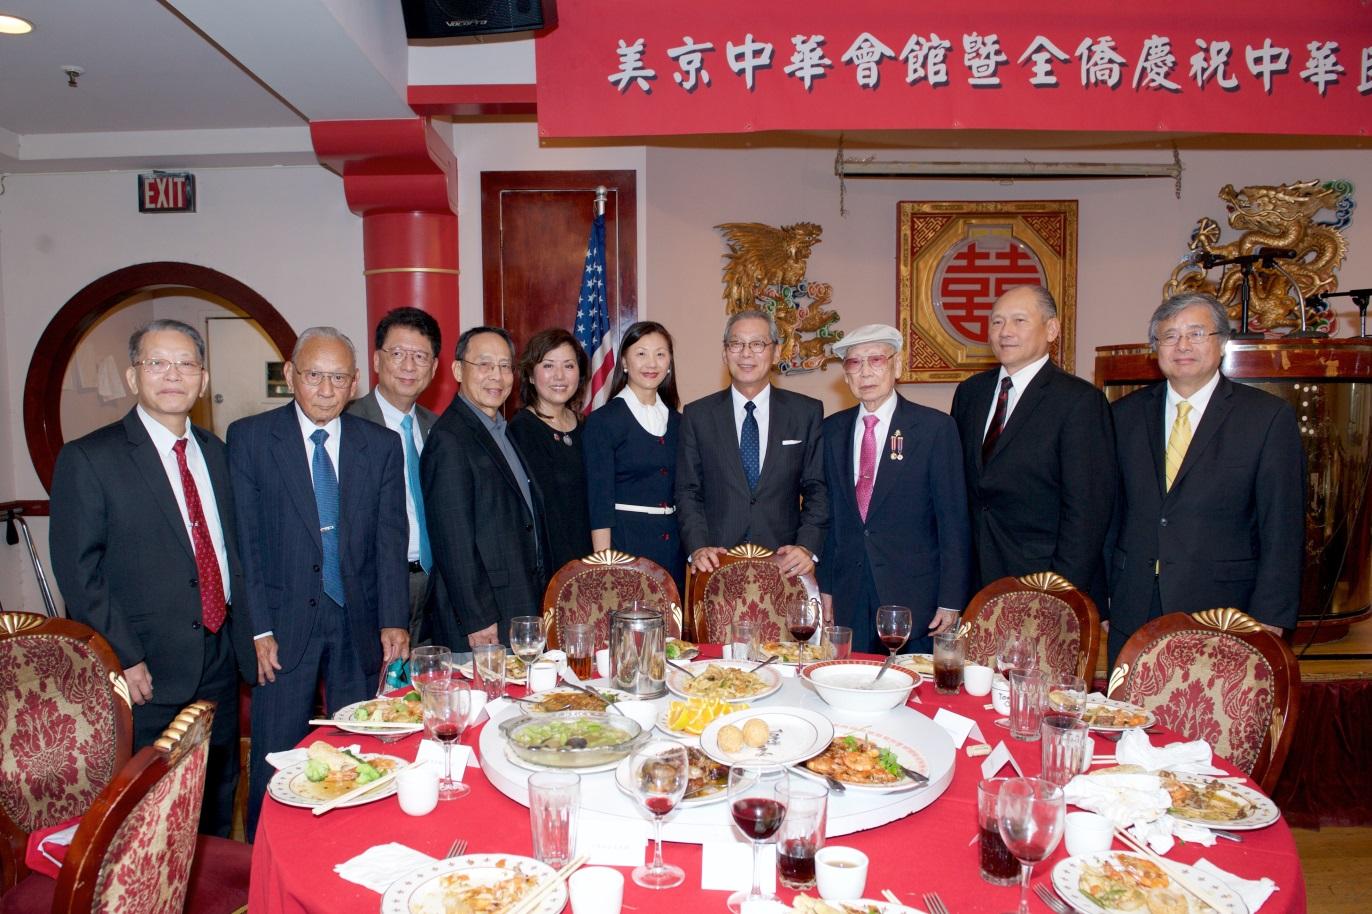 高大使夫婦於美京中華會館國慶聯歡餐會與僑領合影。
Ambassador and Mrs. Kao posed with the Taiwanese/Chinese community leaders at the luncheon celebrating the National Day of Republic of China (Taiwan) on Oct. 8, 2017.